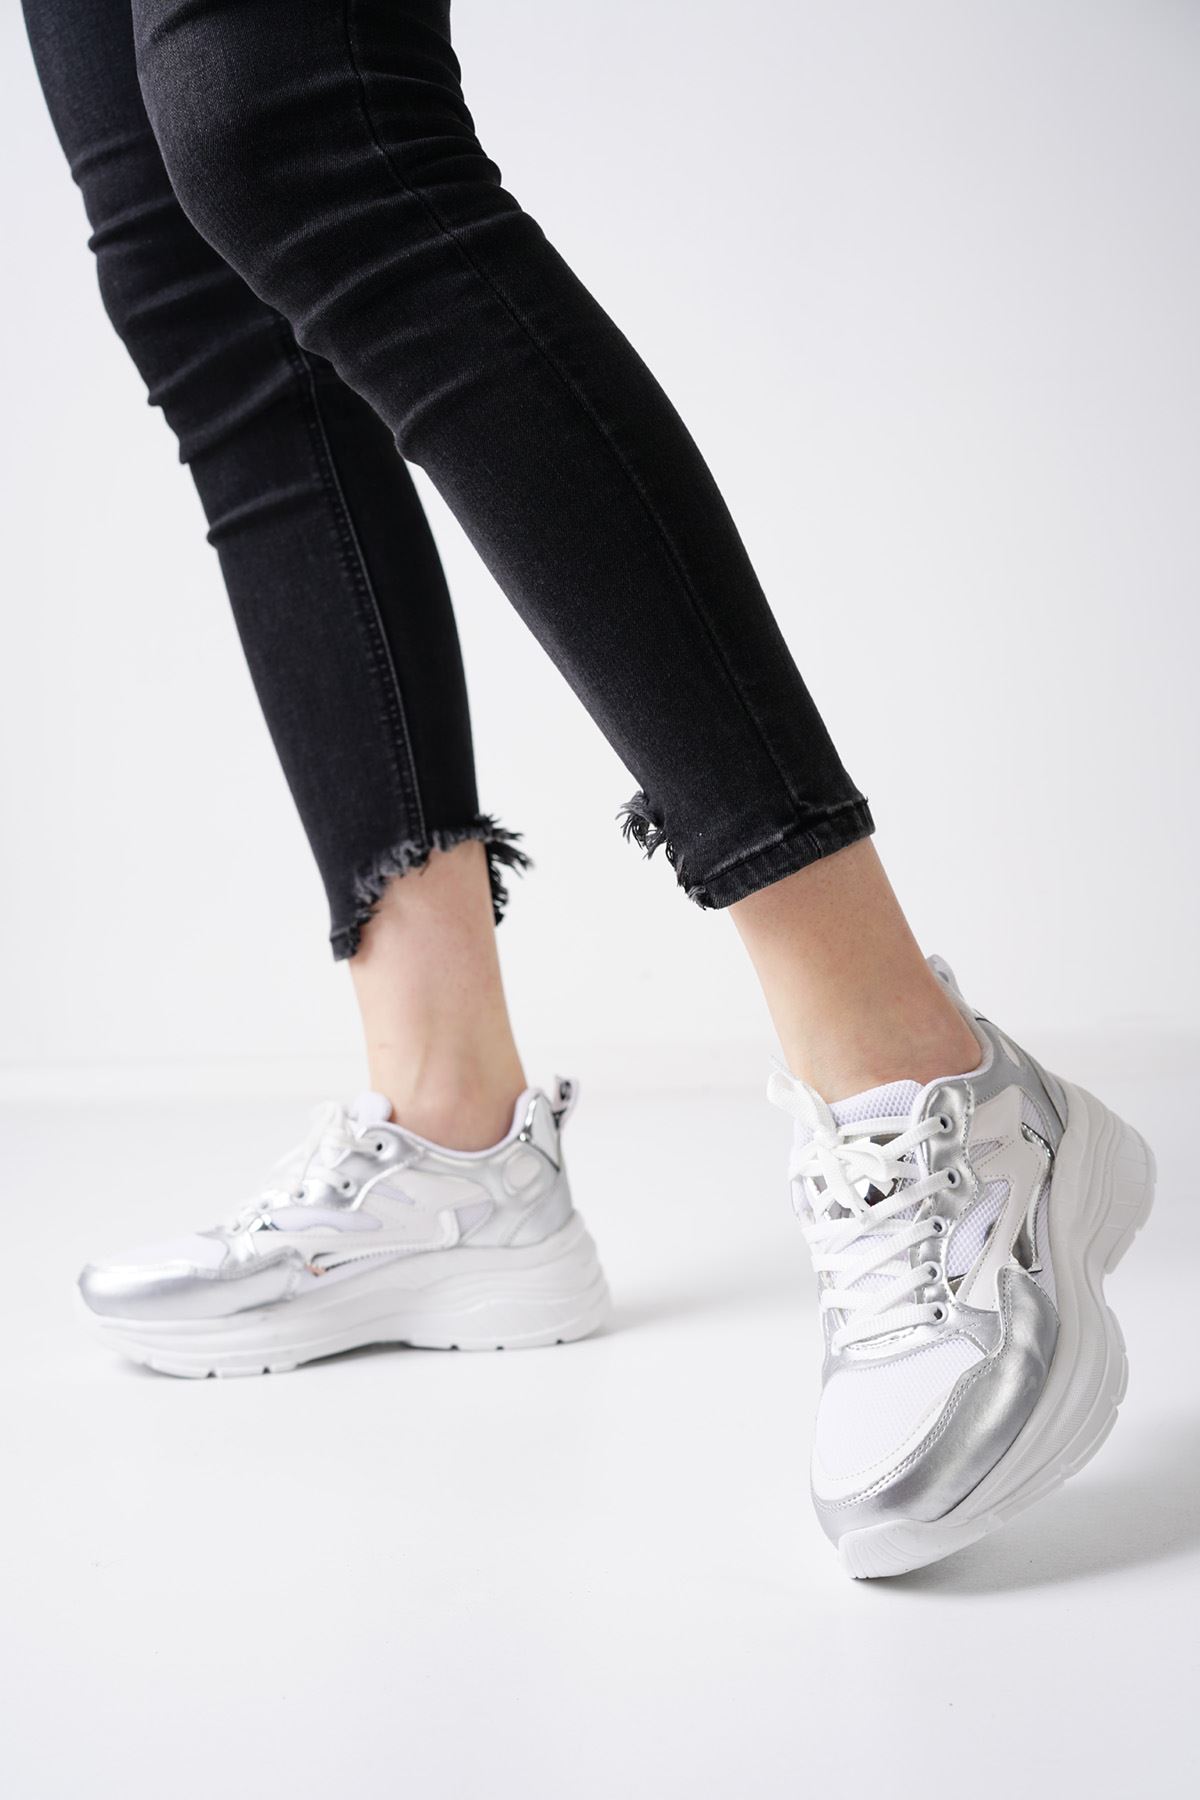 Gilly Beyaz Gümüş Kadın Spor Ayakkabı